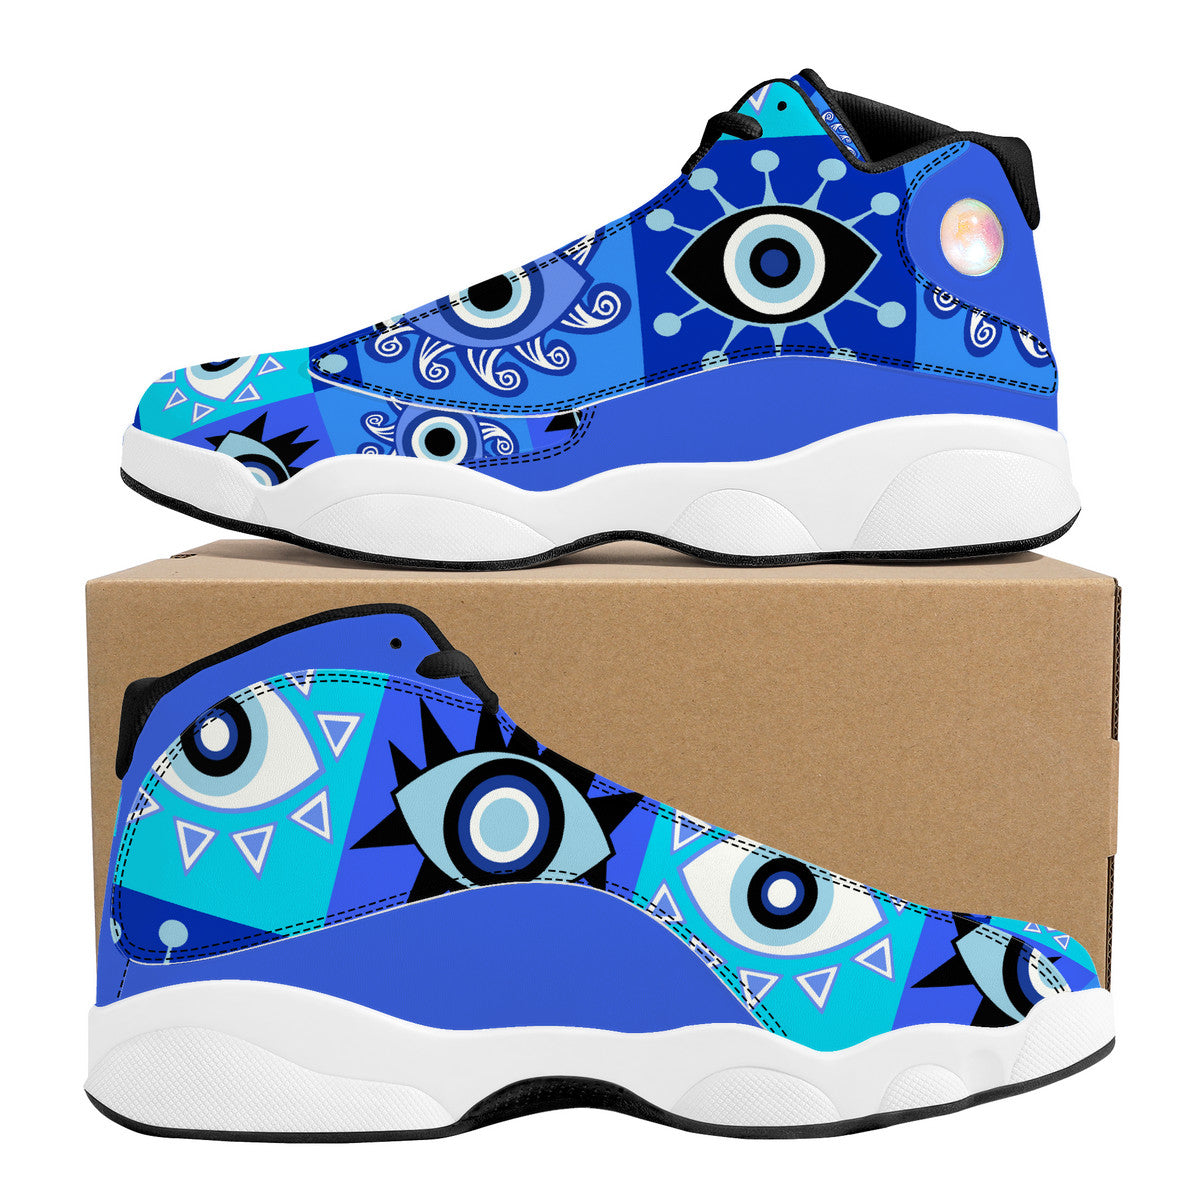 "Evil Eye" Basketball Shoes